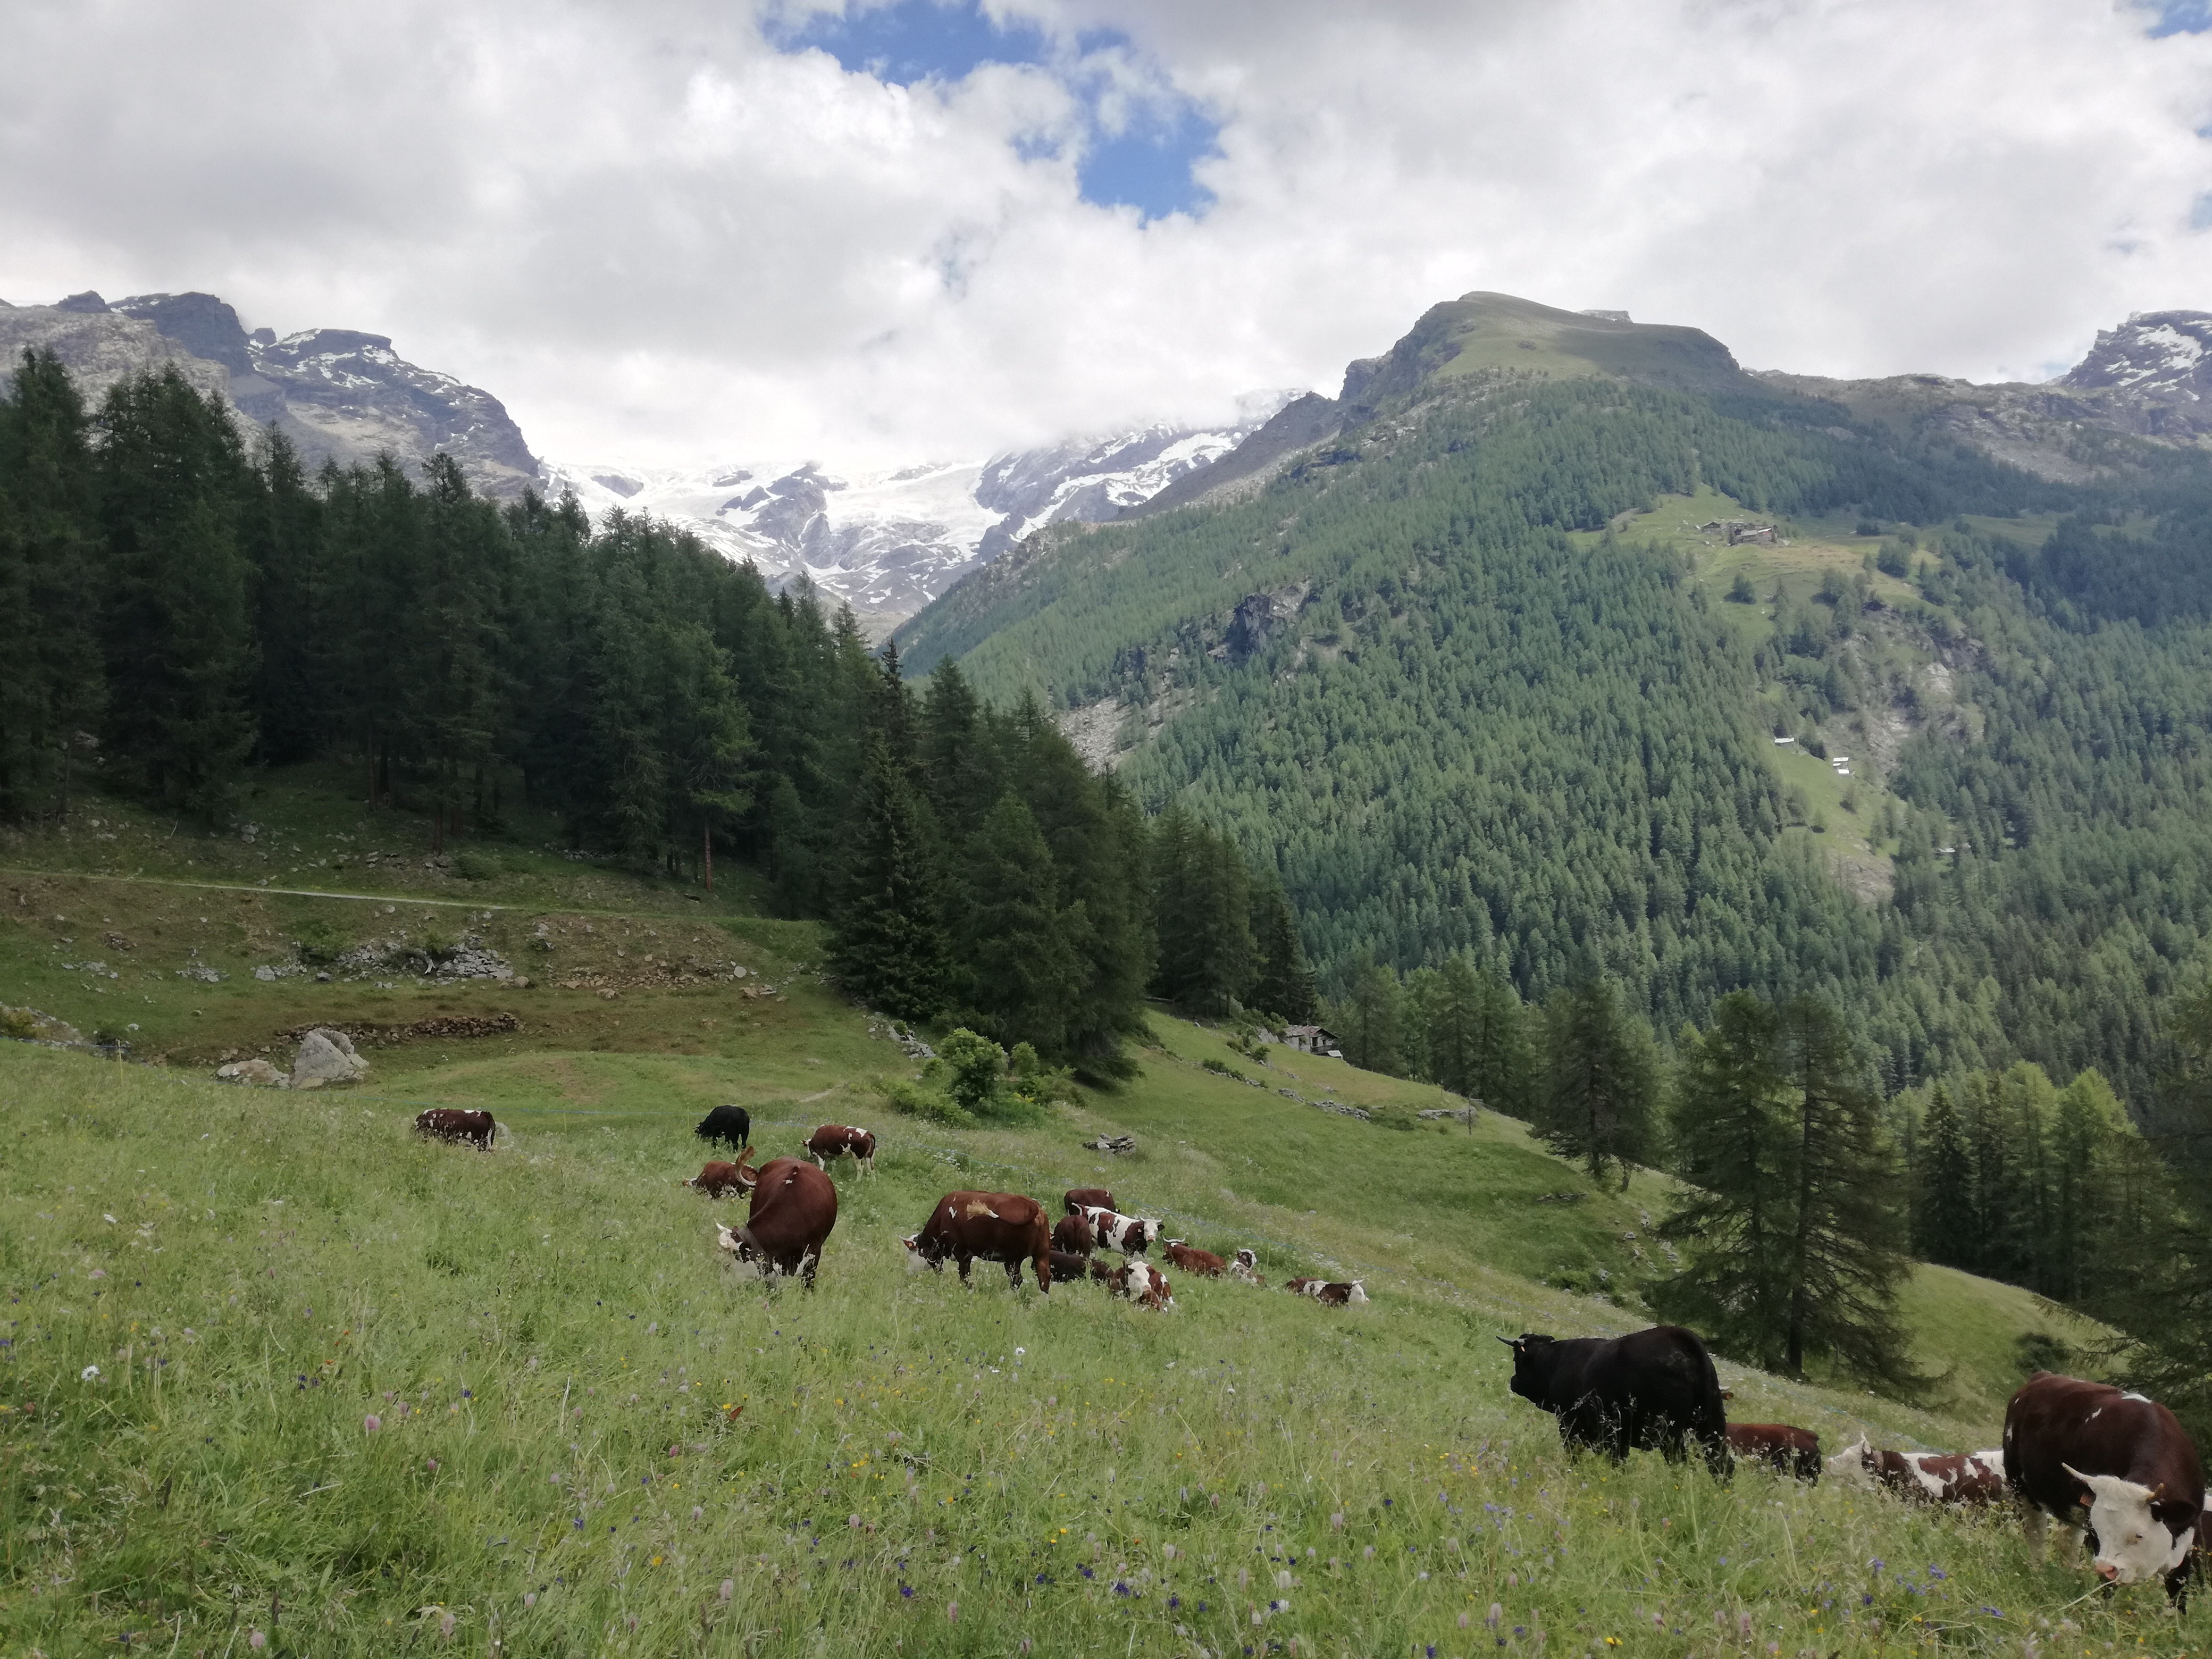 Austria, codice comportamentale, mucche, trekking, pericolo, sicurezza